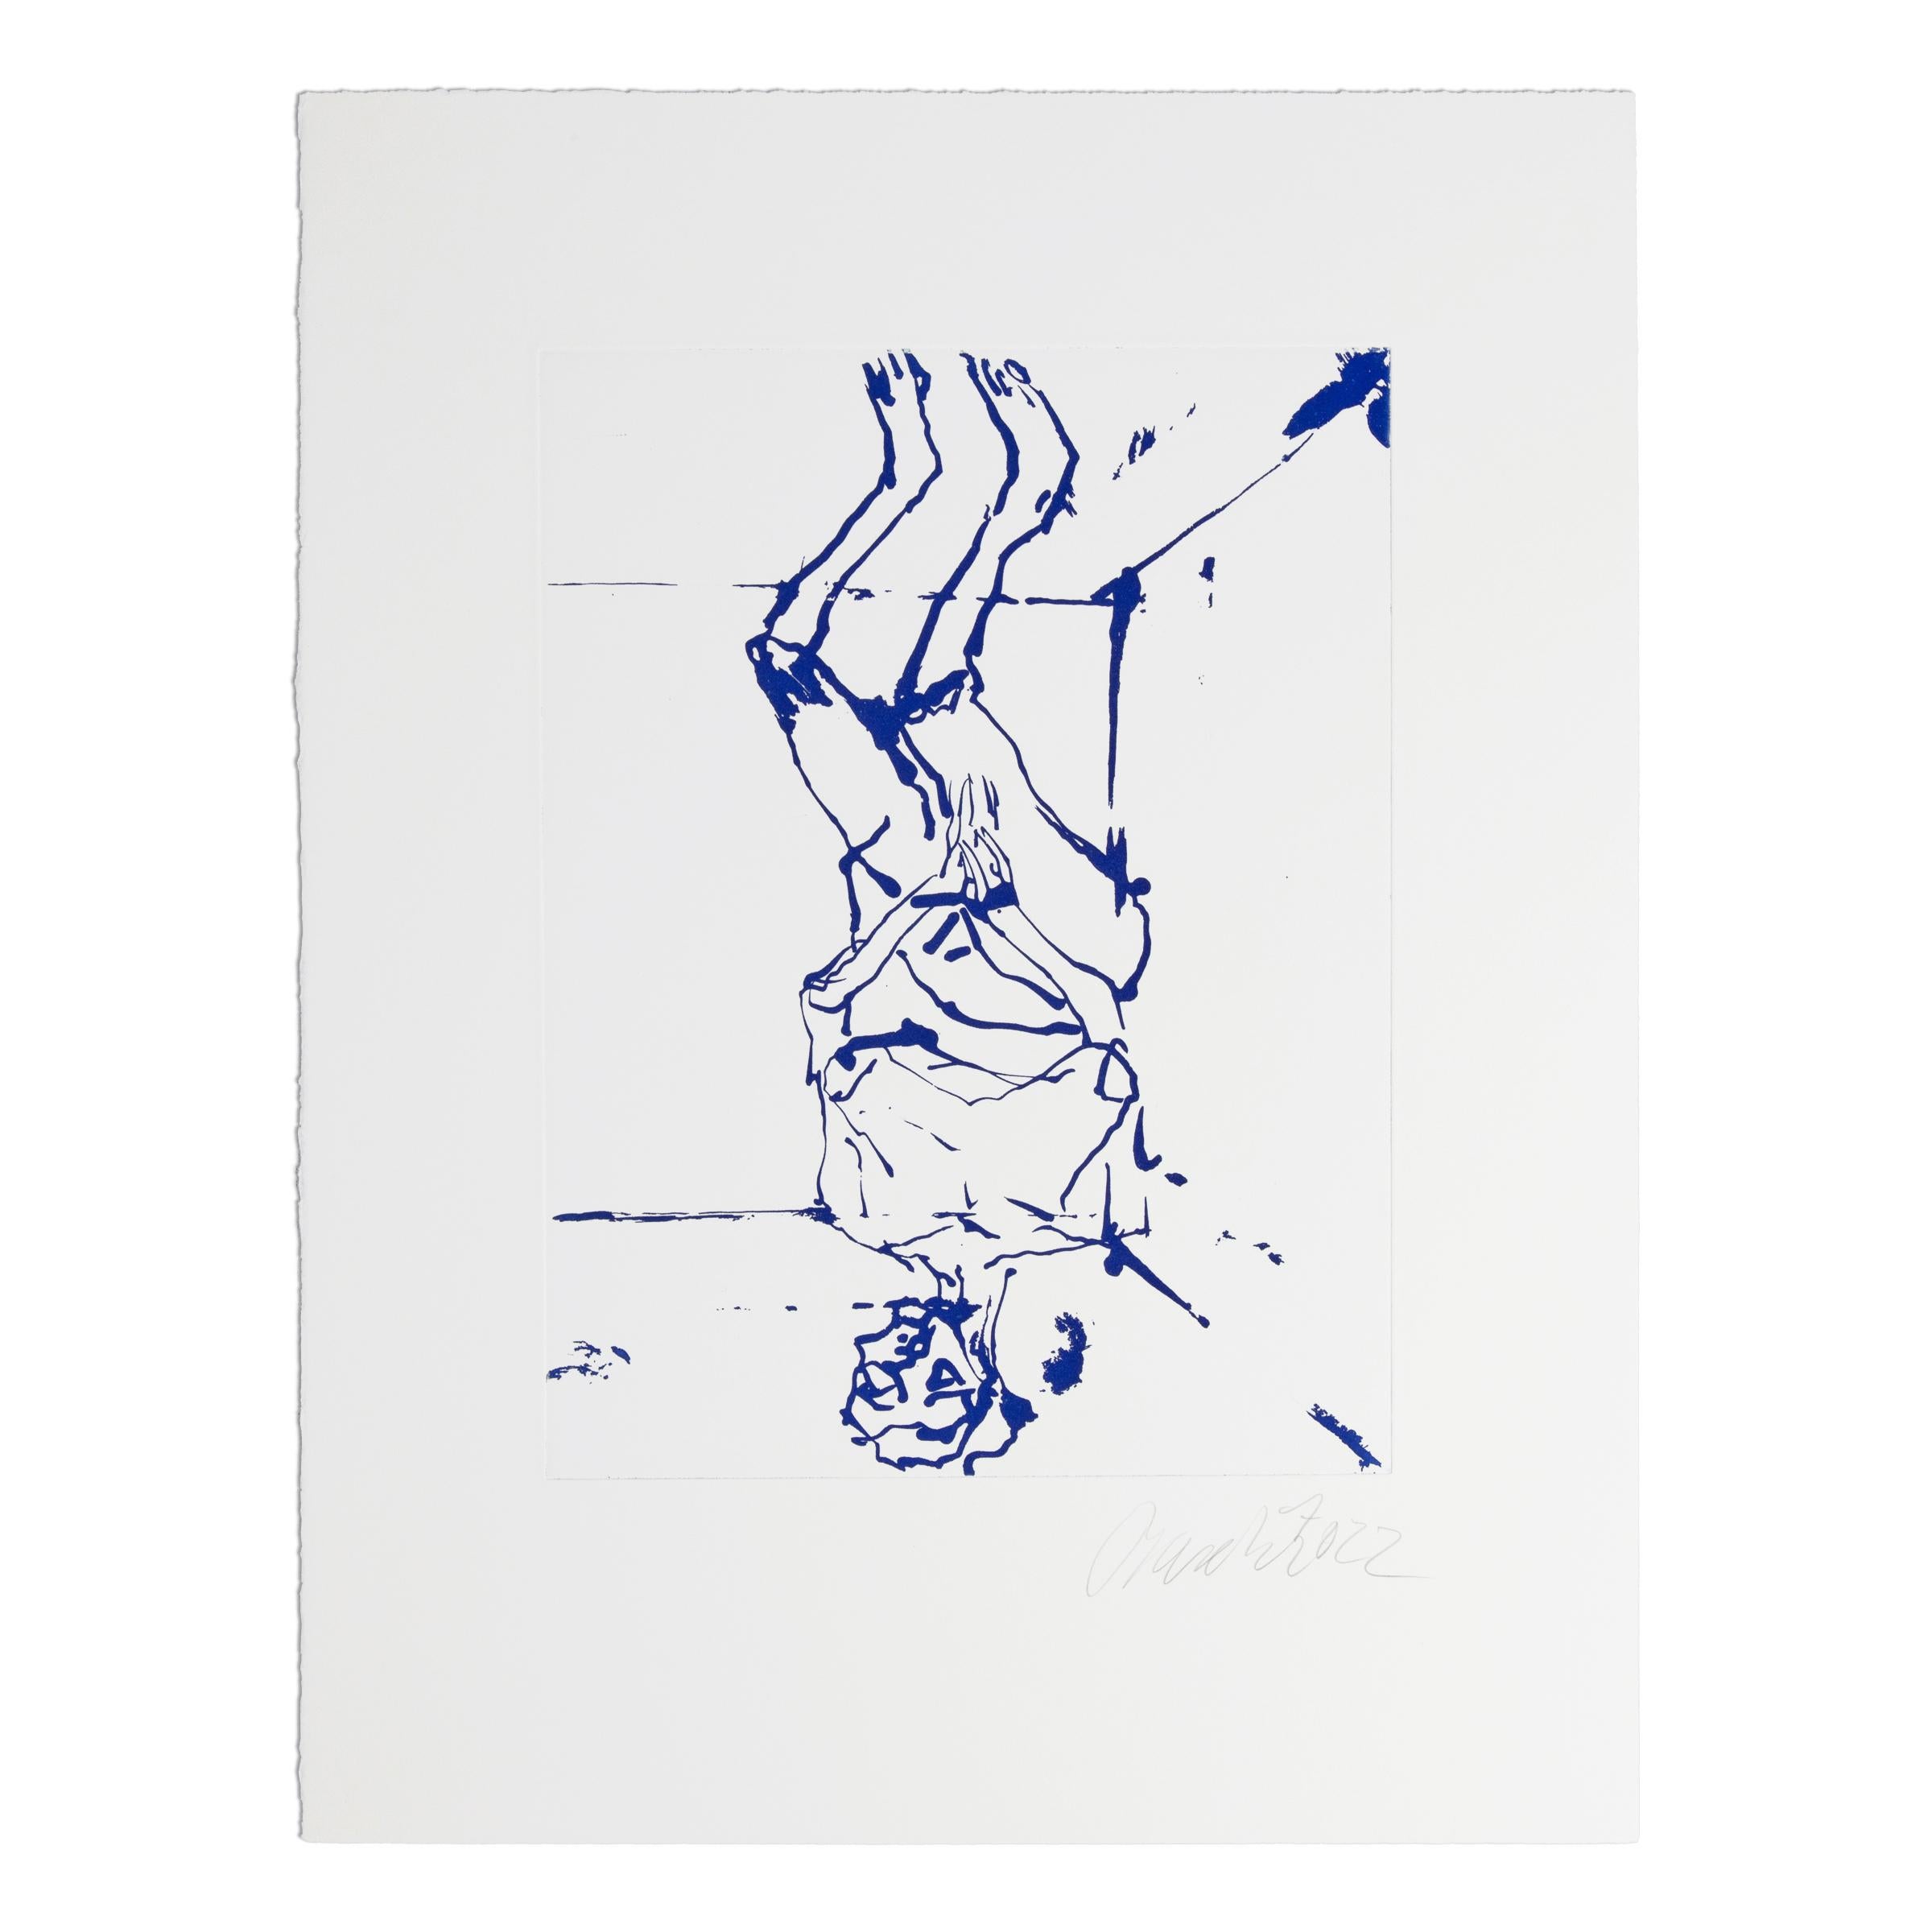 Georg Baselitz (Deutscher, geb. 1938)
Serpentine (Blau), 2022
Medium: Radierung mit Zuckerlift-Aquatinta auf Velinpapier
Abmessungen: 53 × 39 cm (20 9/10 × 15 2/5 in)
Auflage von 50 Stück: handsigniert und nummeriert
Herausgeber: Serpentine Gallery,